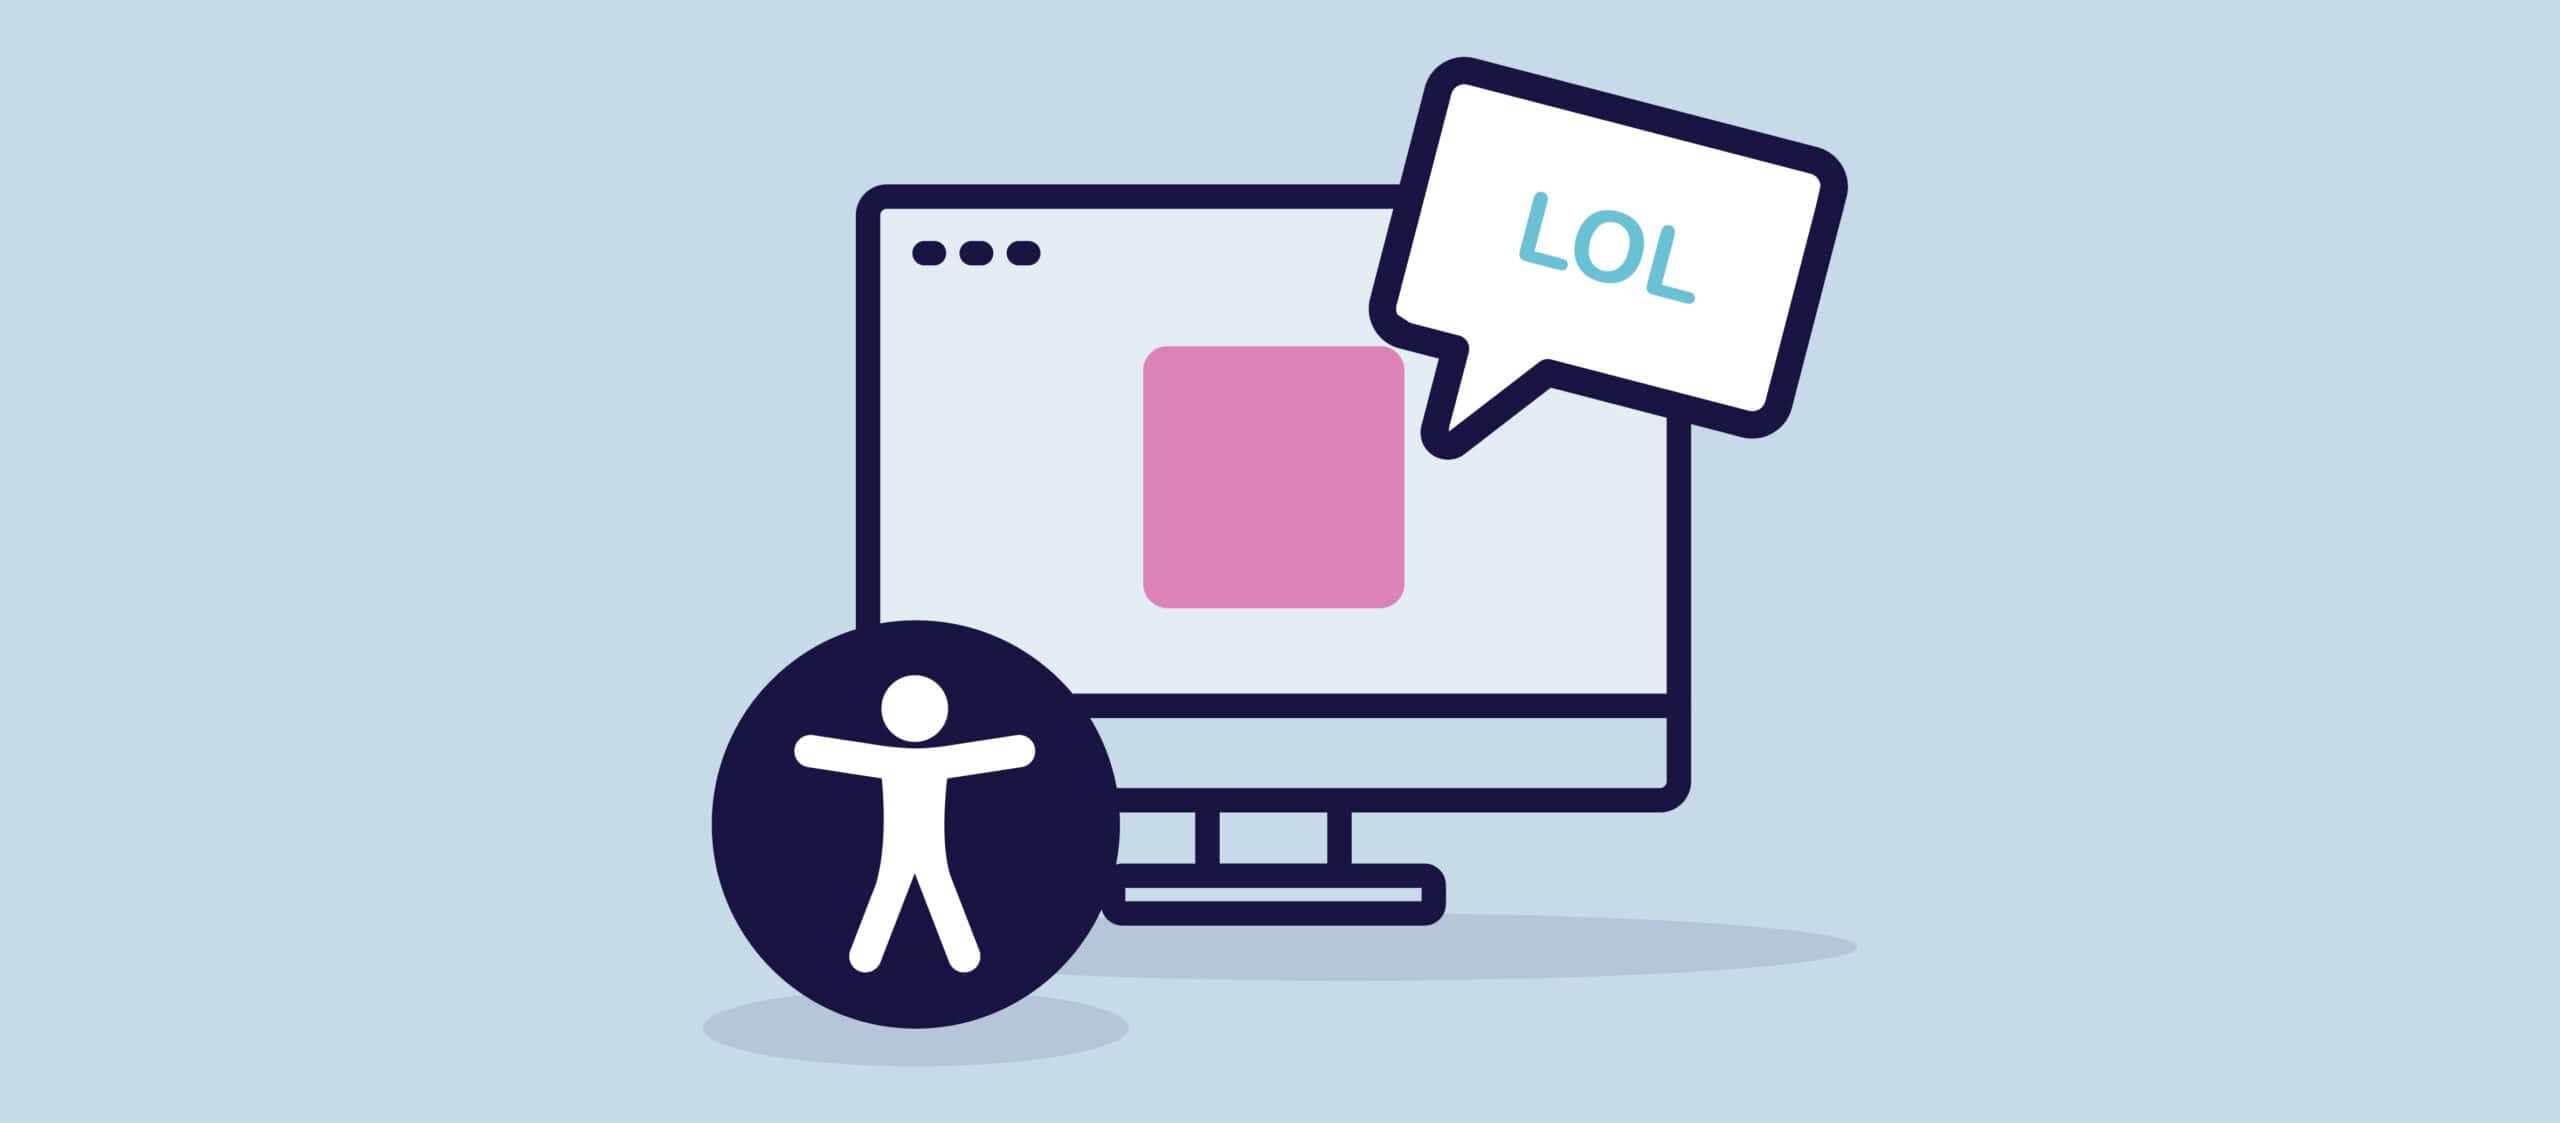 Illustration d'un écran d'ordinateur avec un carré rose sur l'écran représentant un mème. Le mème est suivi d'une bulle de dialogue contenant le texte "LOL". À gauche de l'écran se trouve le symbole d'accessibilité universelle.